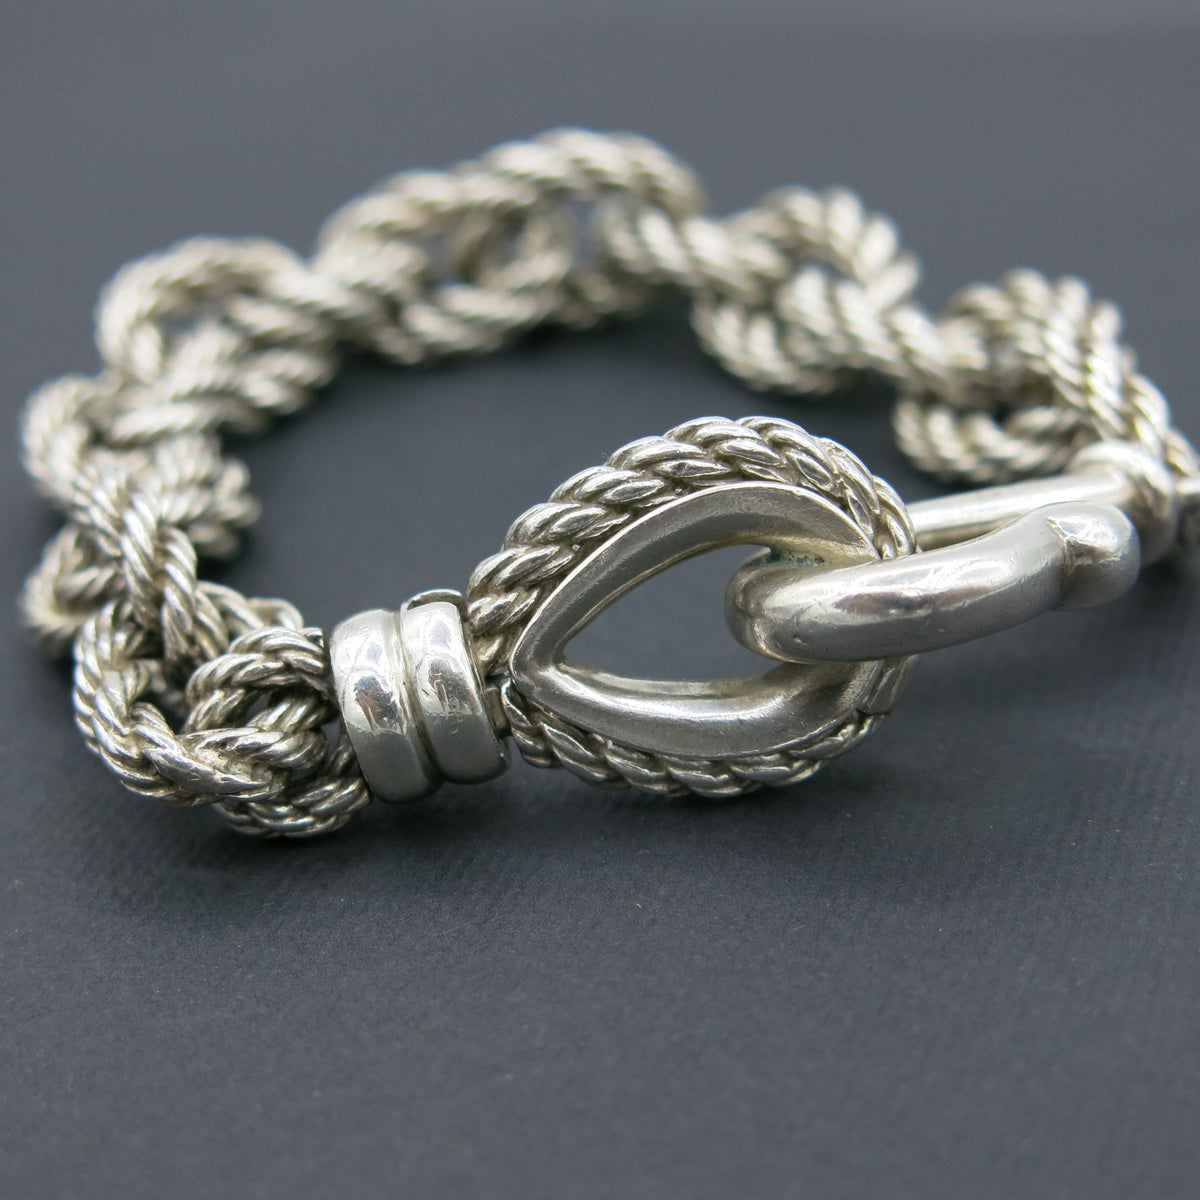 Hermès “Quadrille” bracelet